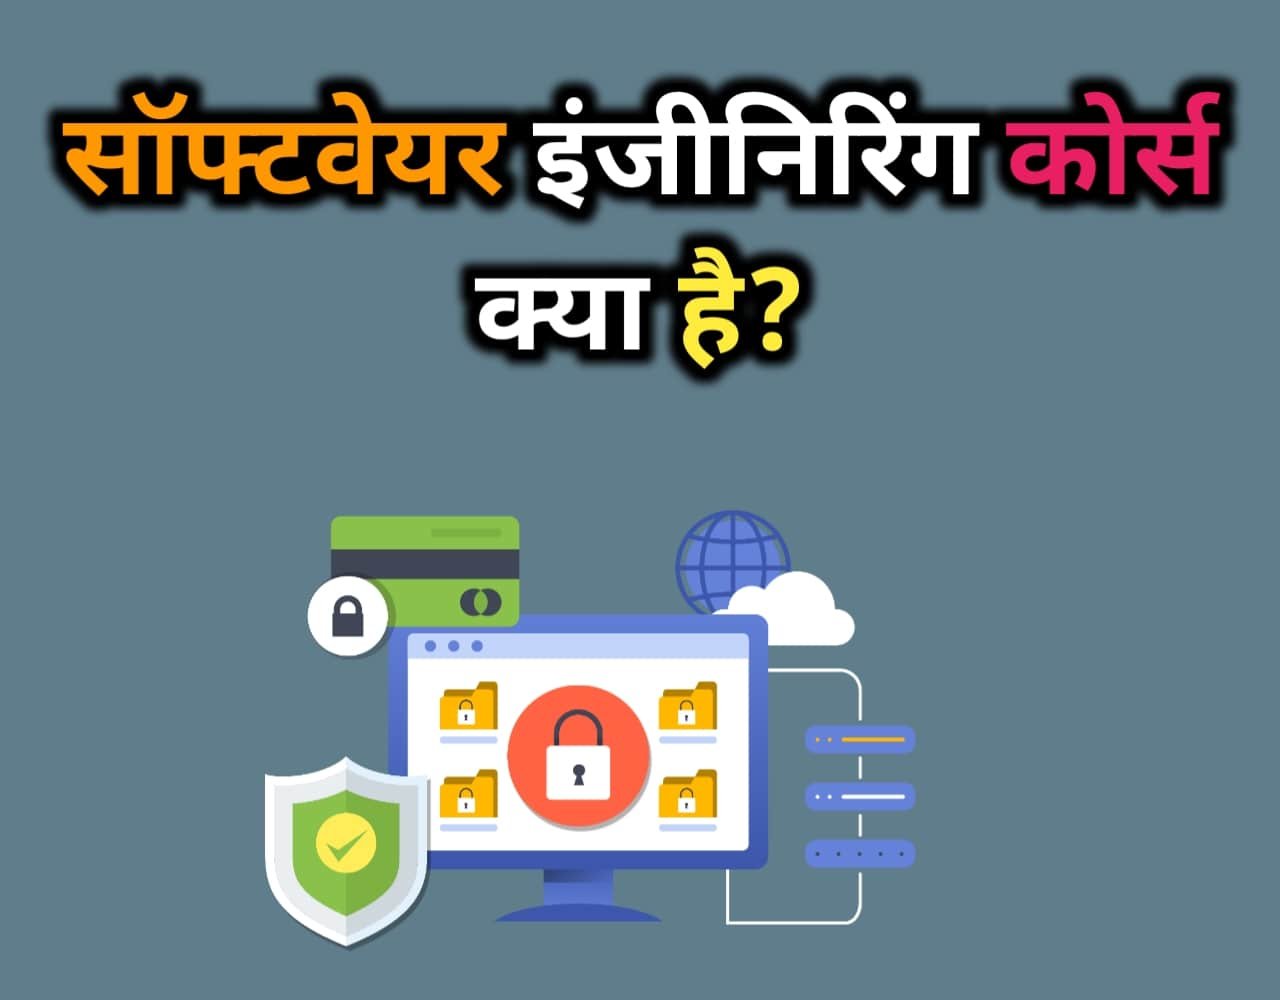 Software Engineering Course Details in Hindi | सॉफ्टवेयर इंजीनियरिंग कोर्स क्या है?